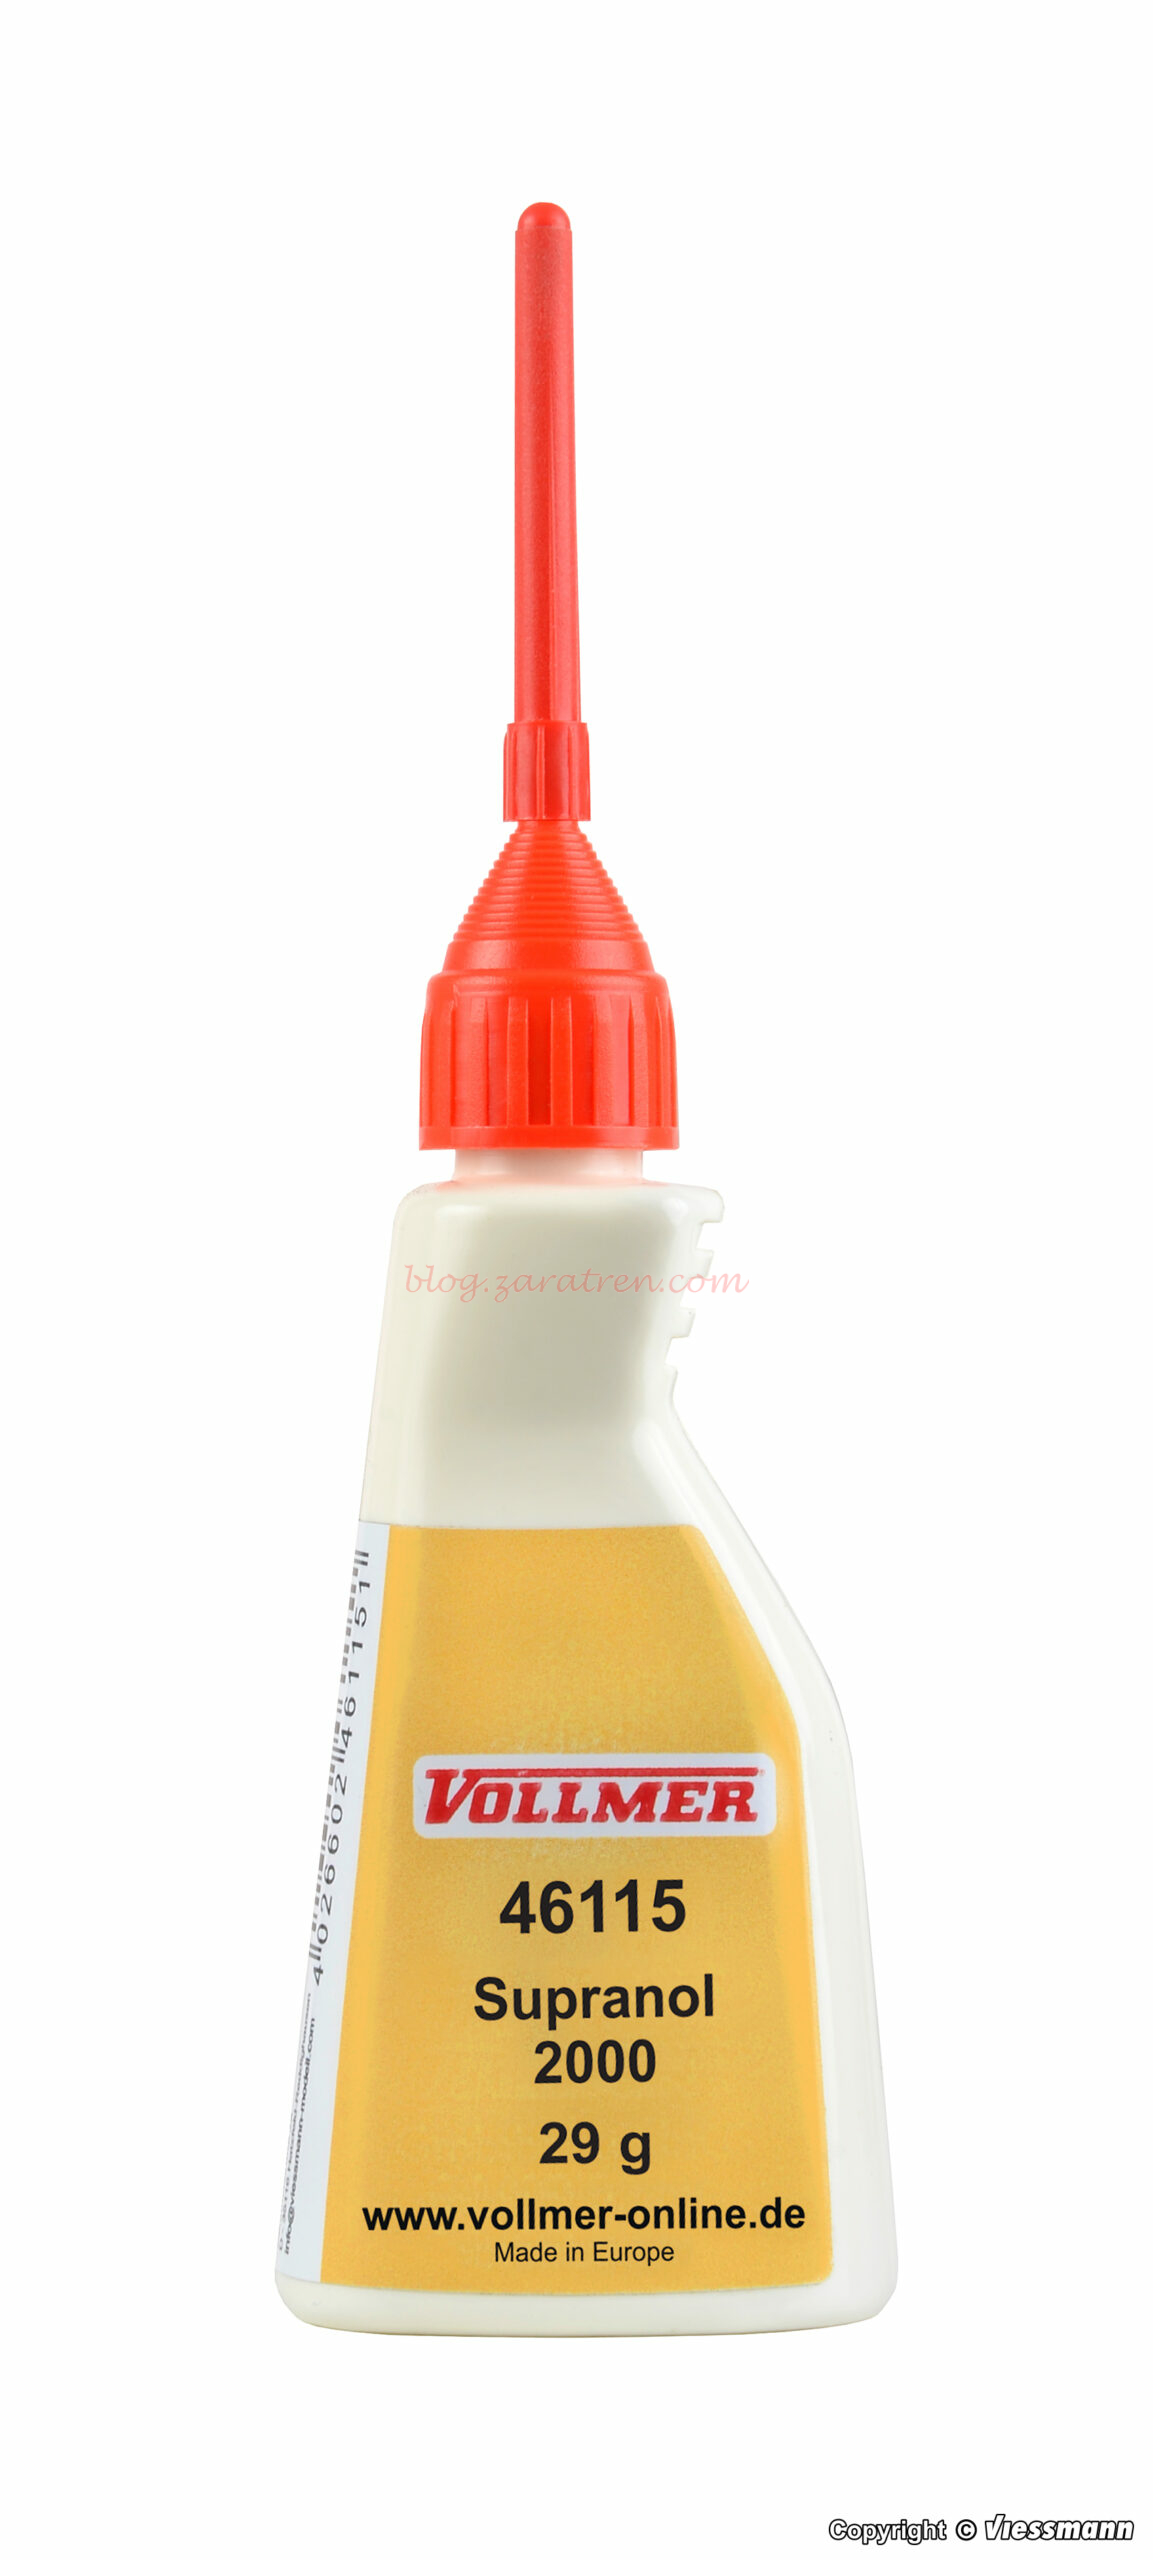 Vollmer – Pegamento para pegar Plasticos Supranol 2000, 33 ml, Ref: 46115.